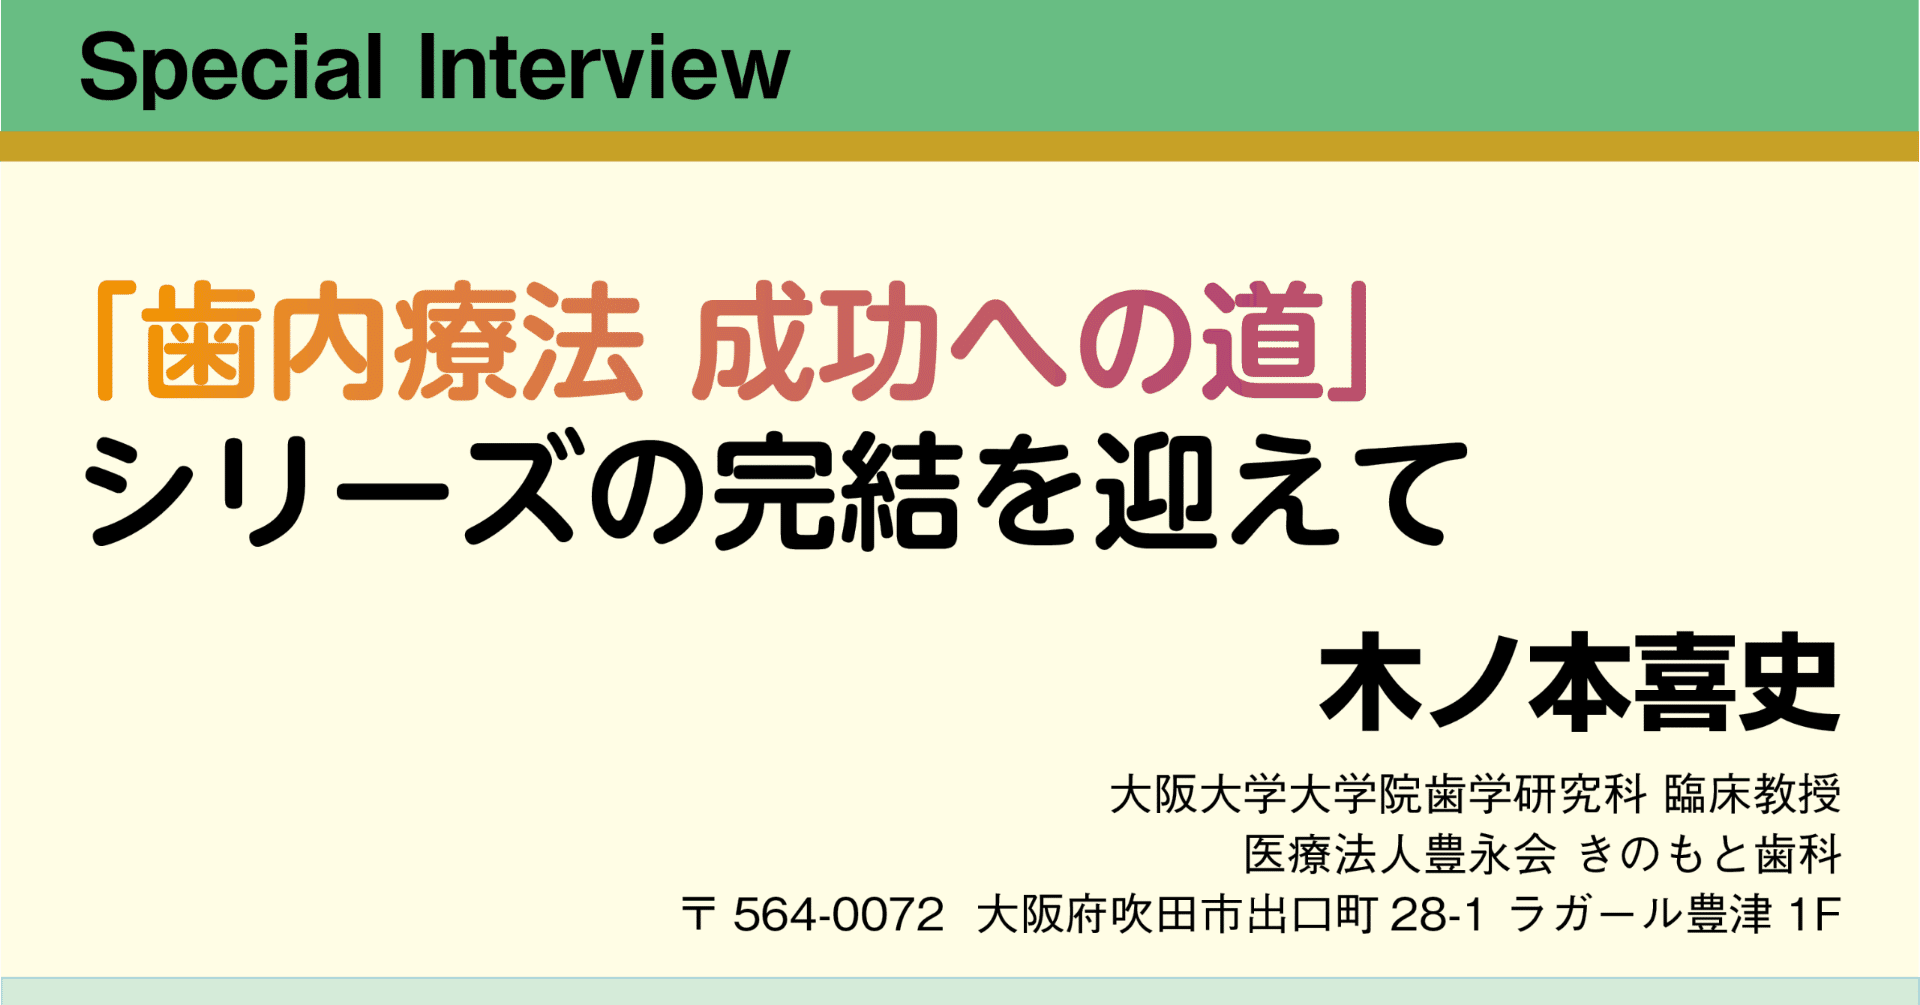 Special Interview：「歯内療法 成功への道」シリーズの完結を迎えて｜月刊『日本歯科評論』編集部（ヒョーロン・パブリッシャーズ）